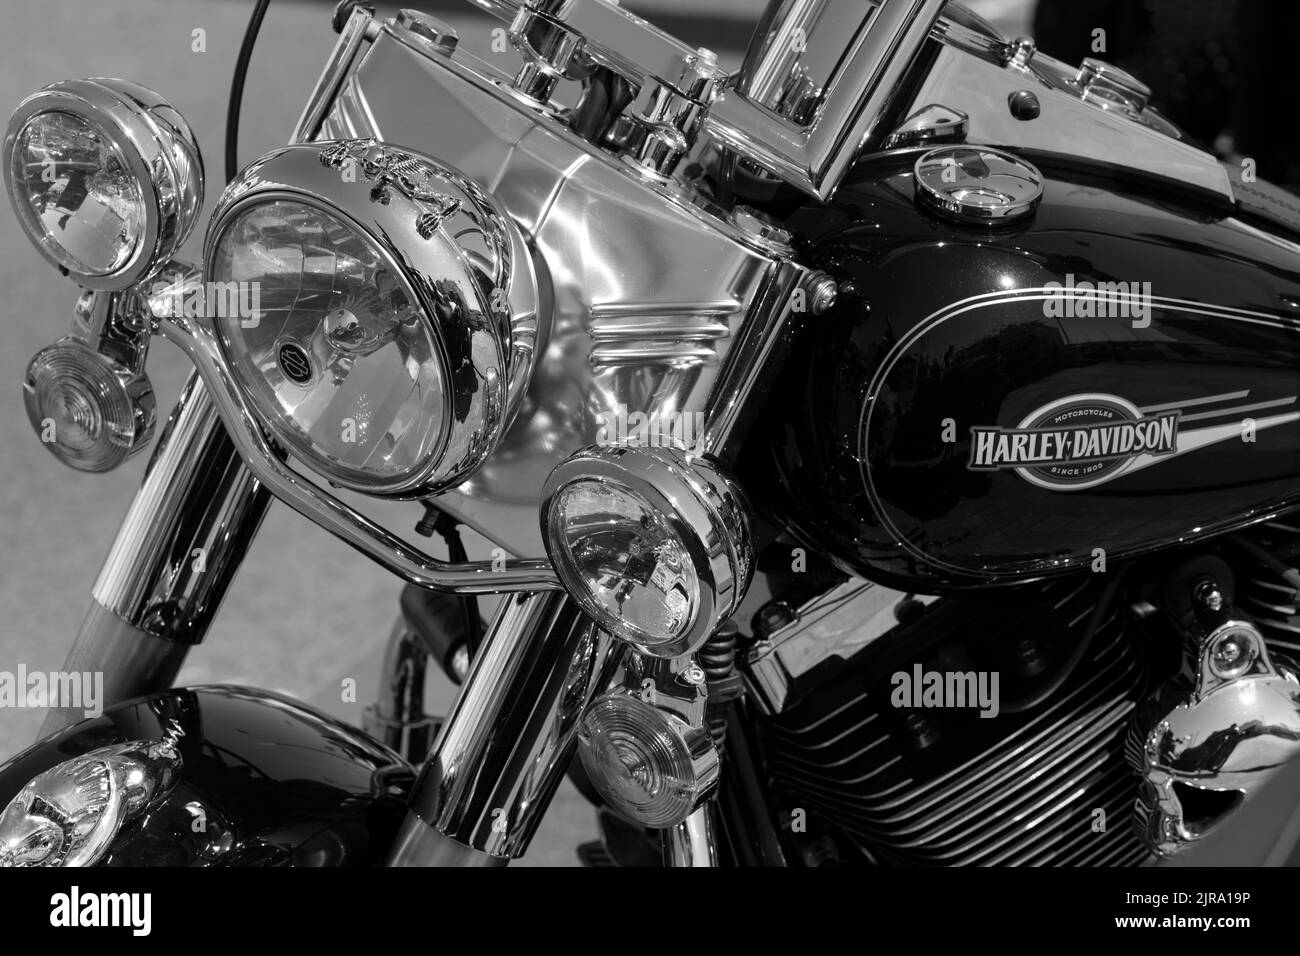 Detalles de una motocicleta Harley Davidson Foto de stock